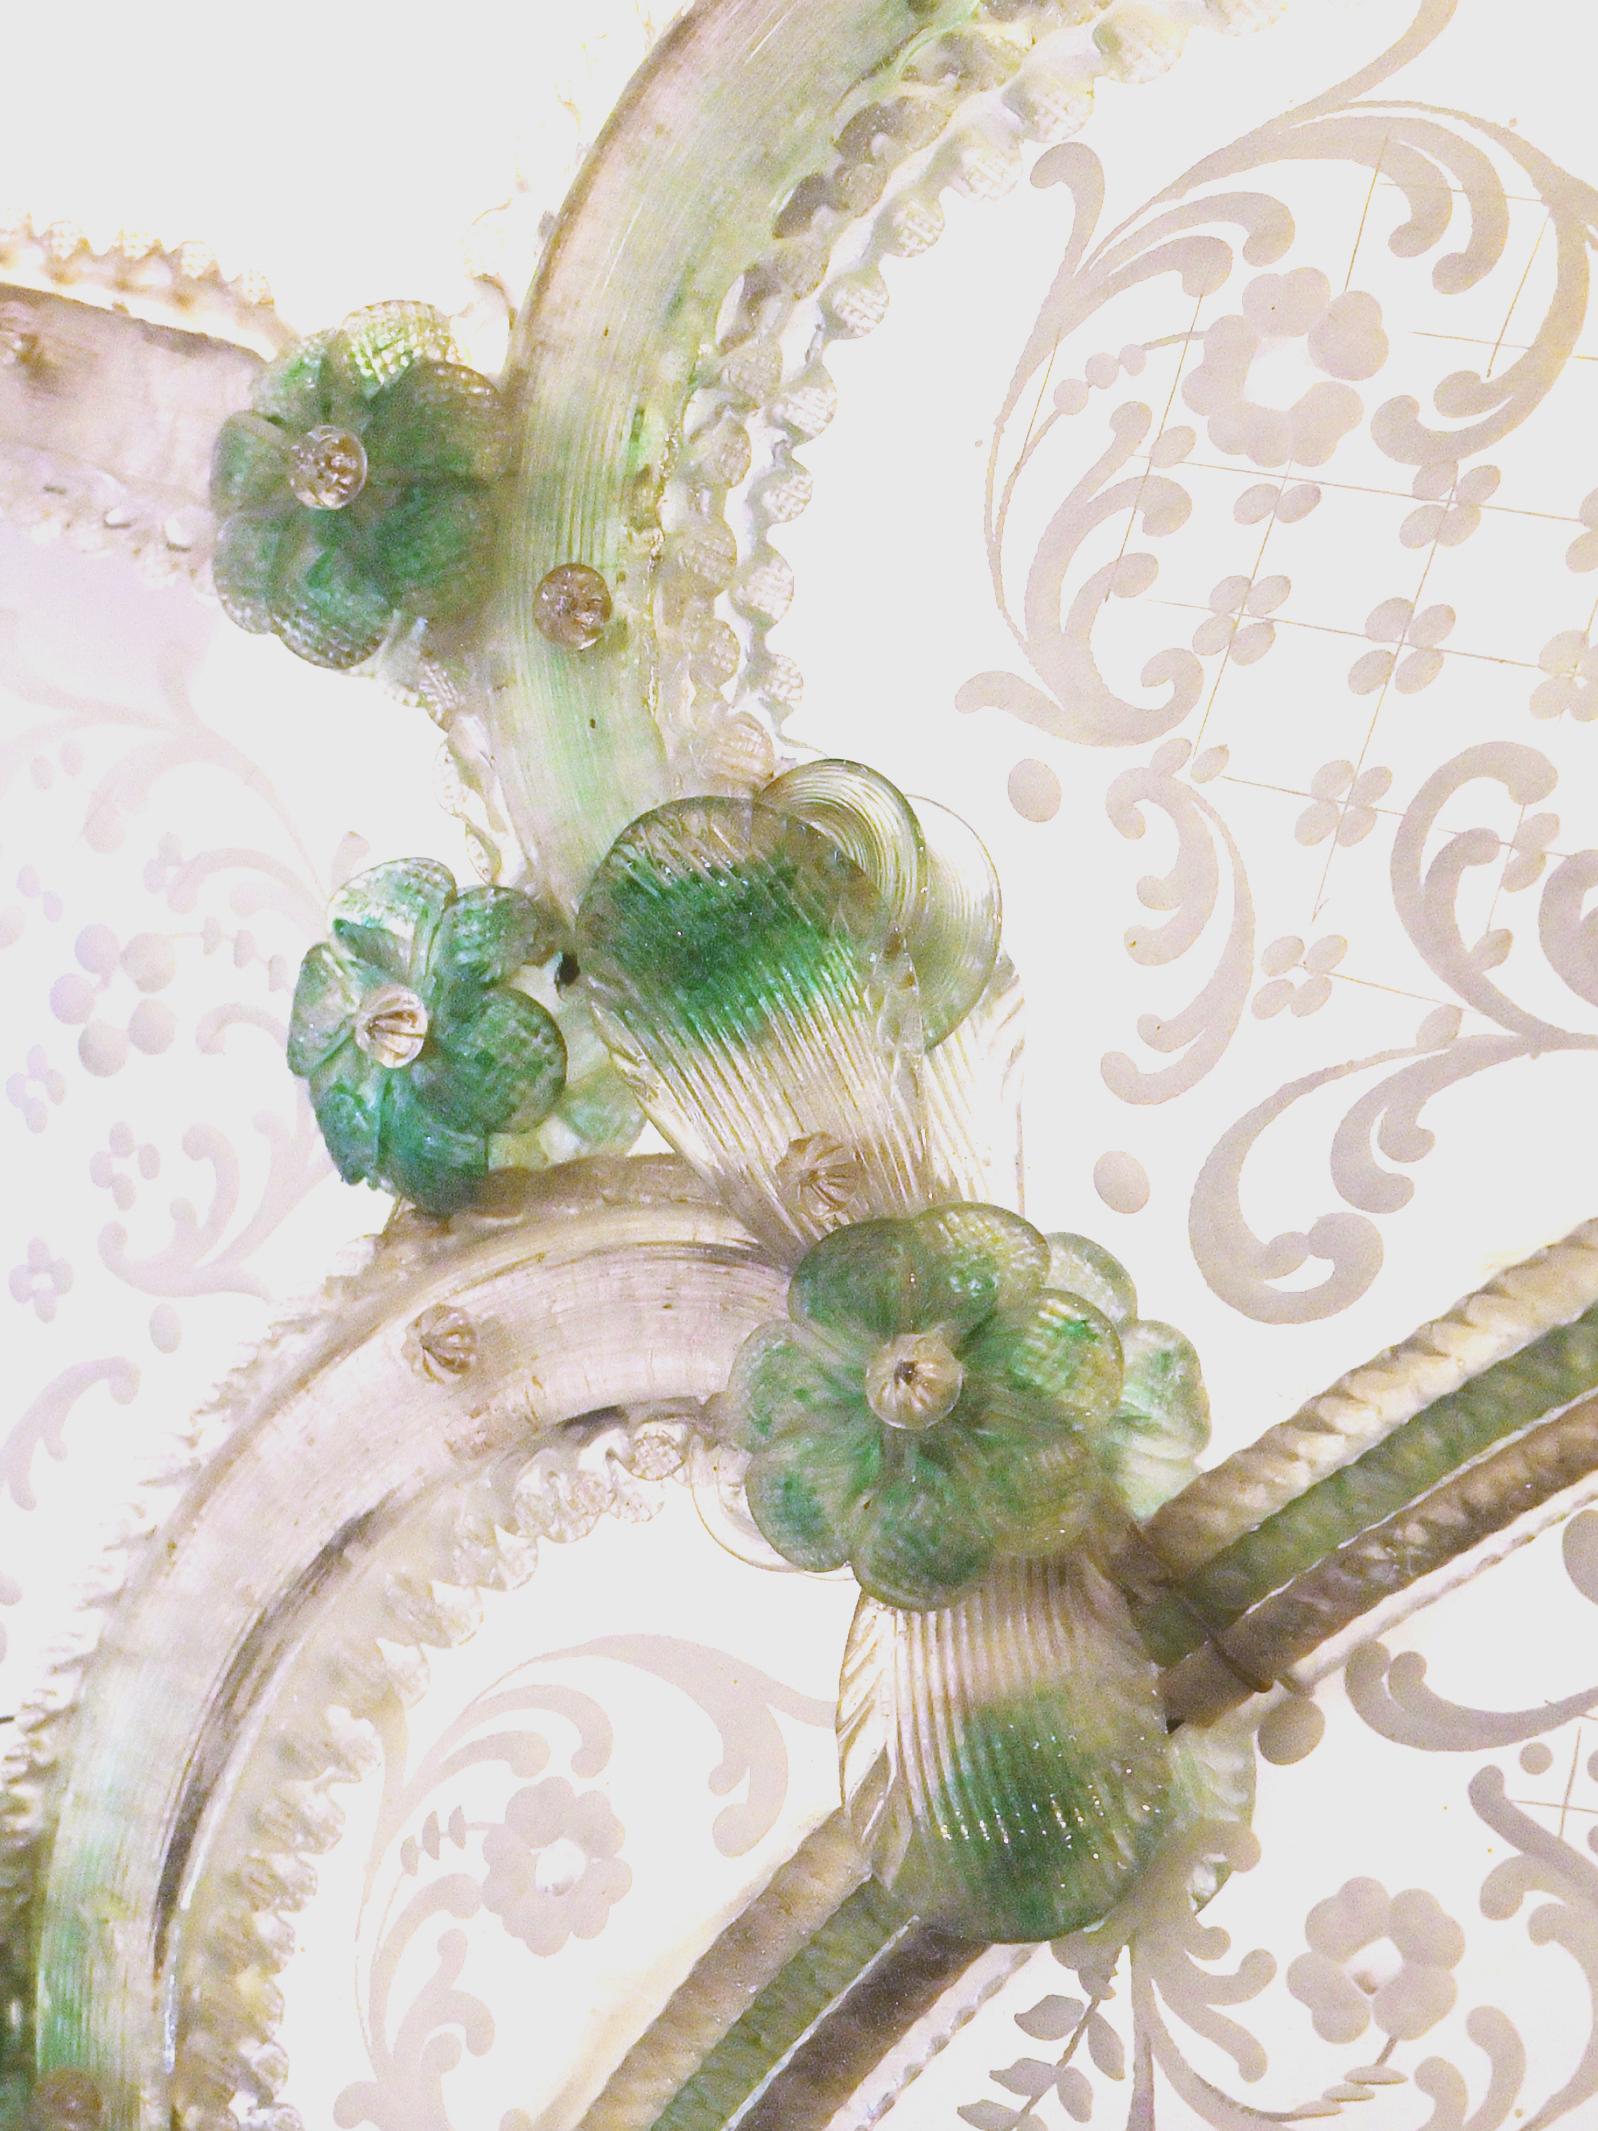 Miroir italien en verre vénitien de style rococo. Le grand verre ovale biseauté au centre est entouré de sections avec des motifs de couronnes florales en verre gravé, divisées par des sections soufflées à la main en verre de Murano de couleur